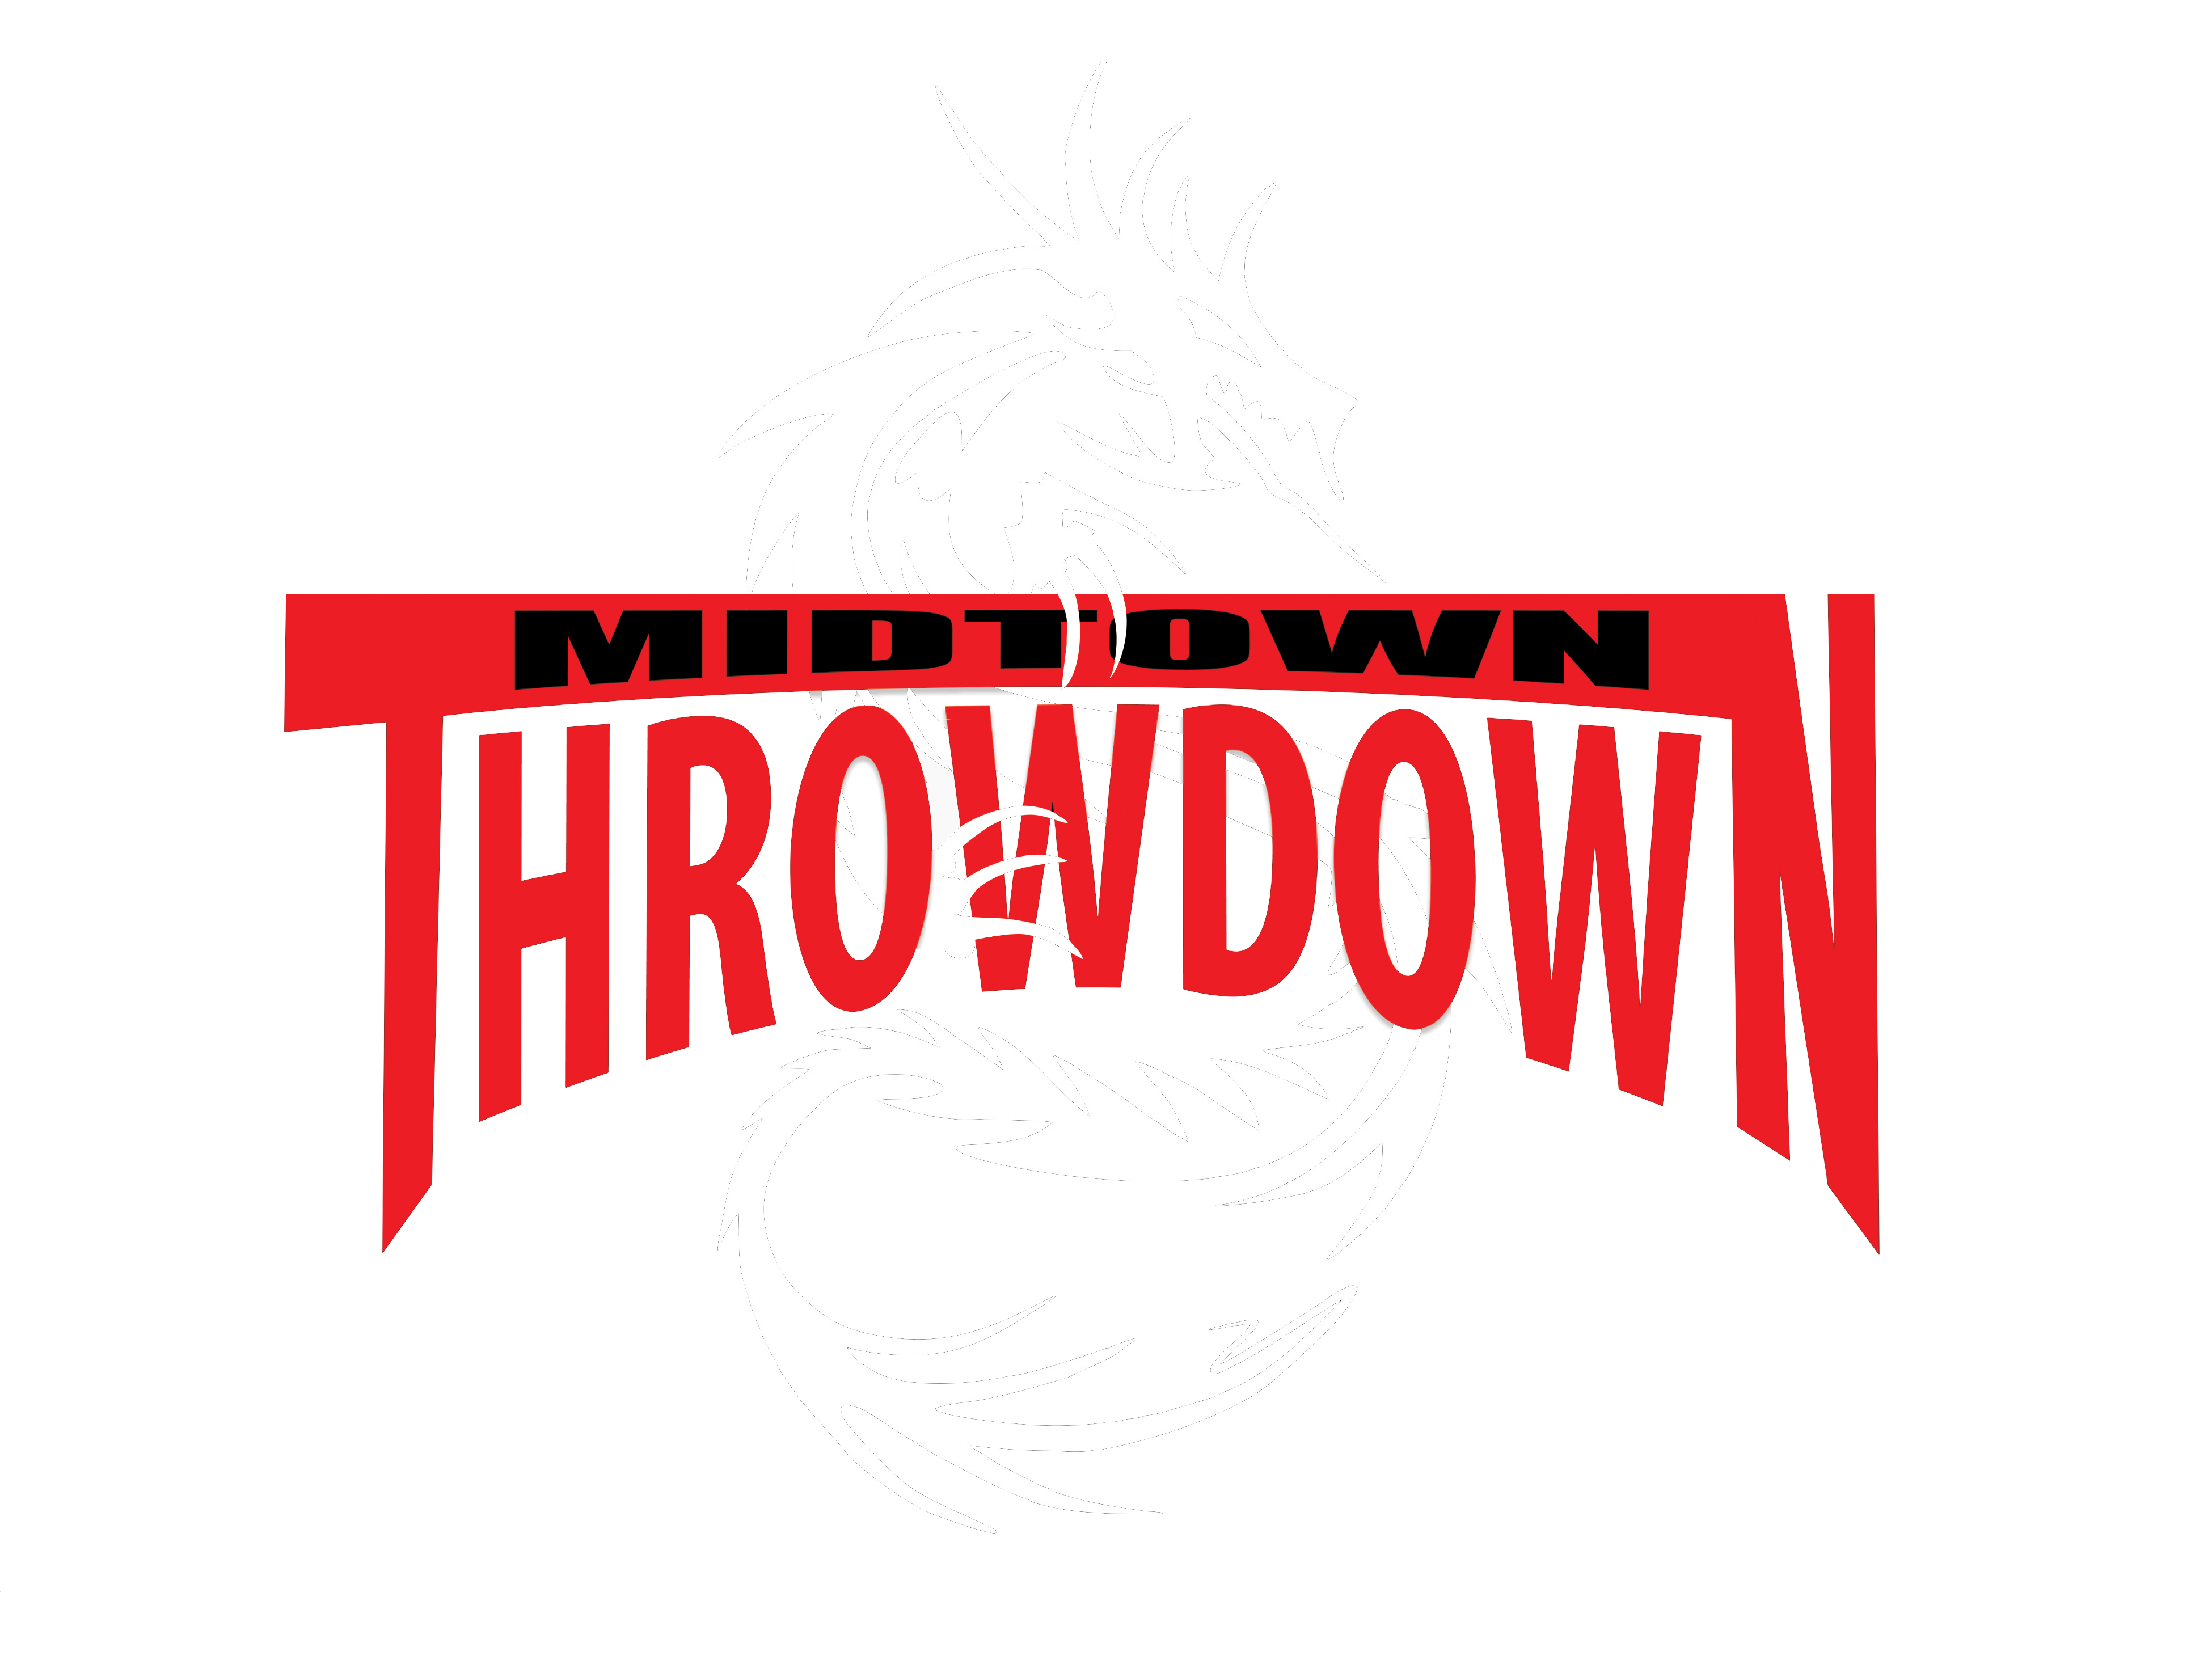 Midtown Throwdown